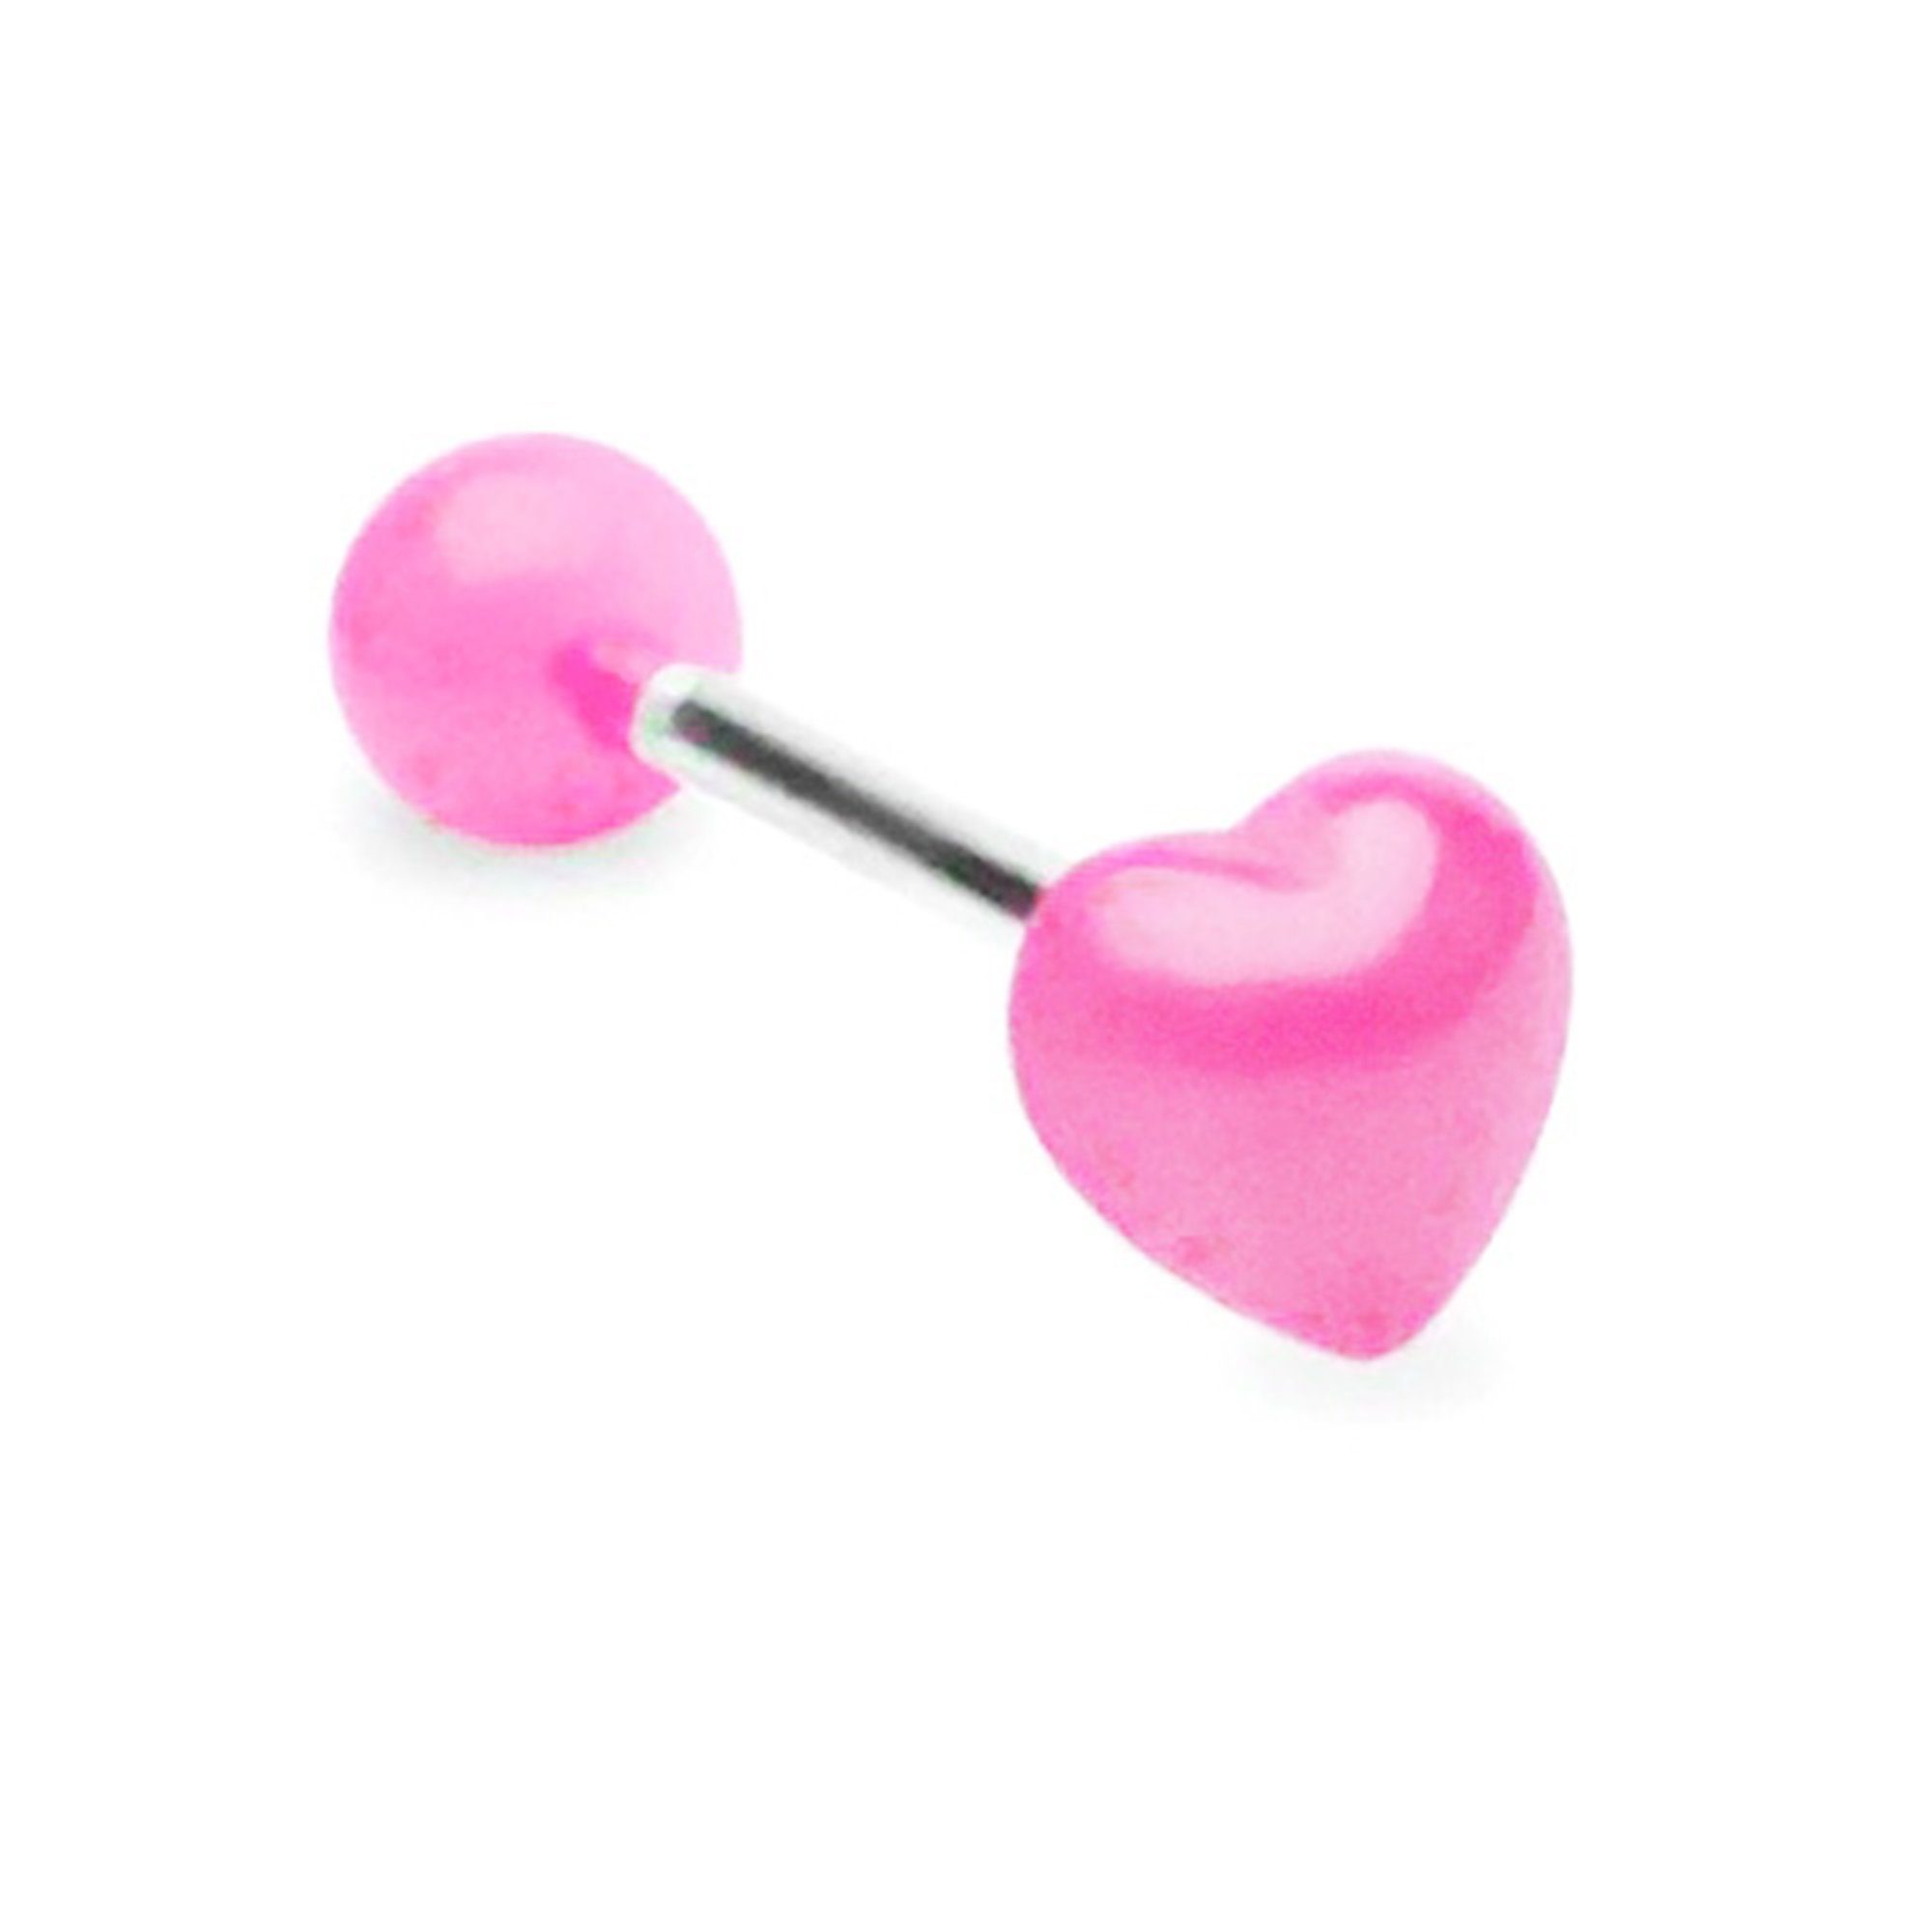 Stab Herz, Stecker Taffstyle Piercingfaktor Pink Intim Zungenpiercing Ohr Brust Hantel UV Piercing-Set Barbell Oral Zungenpiercing mit Intim